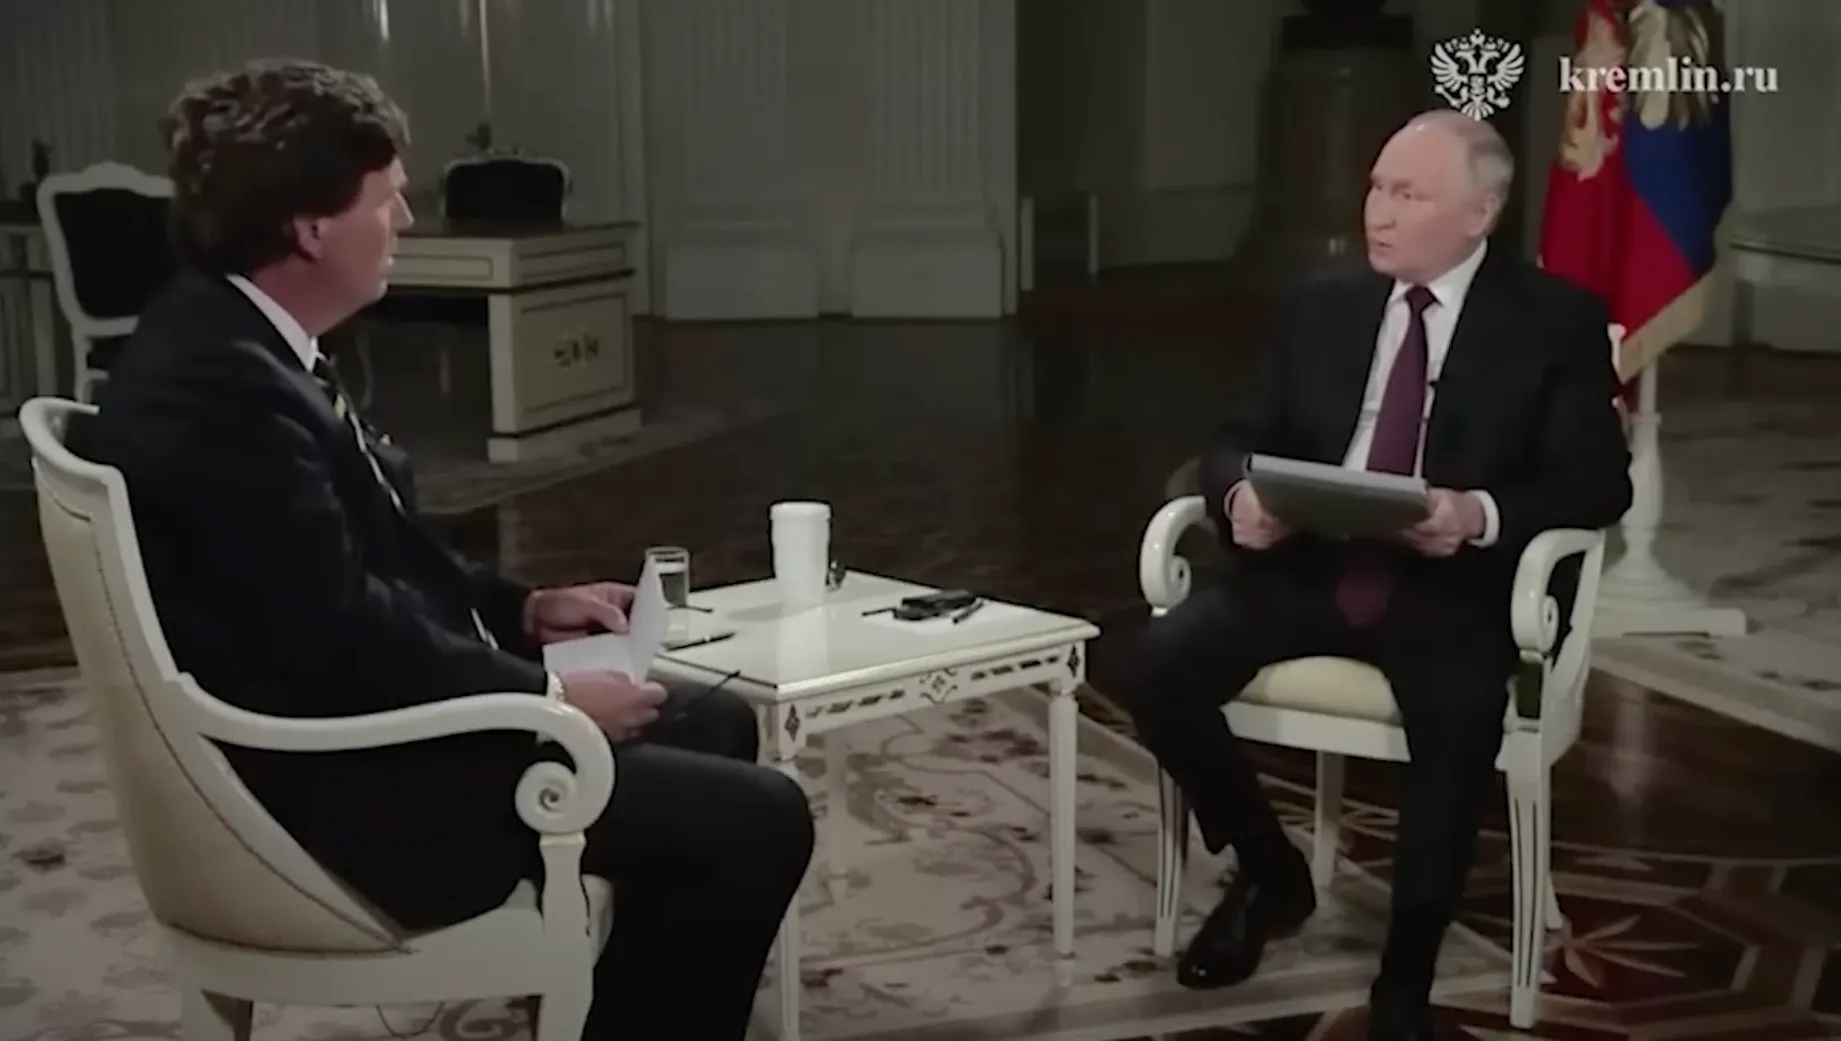 Интервью Путина и Такера Карлсона